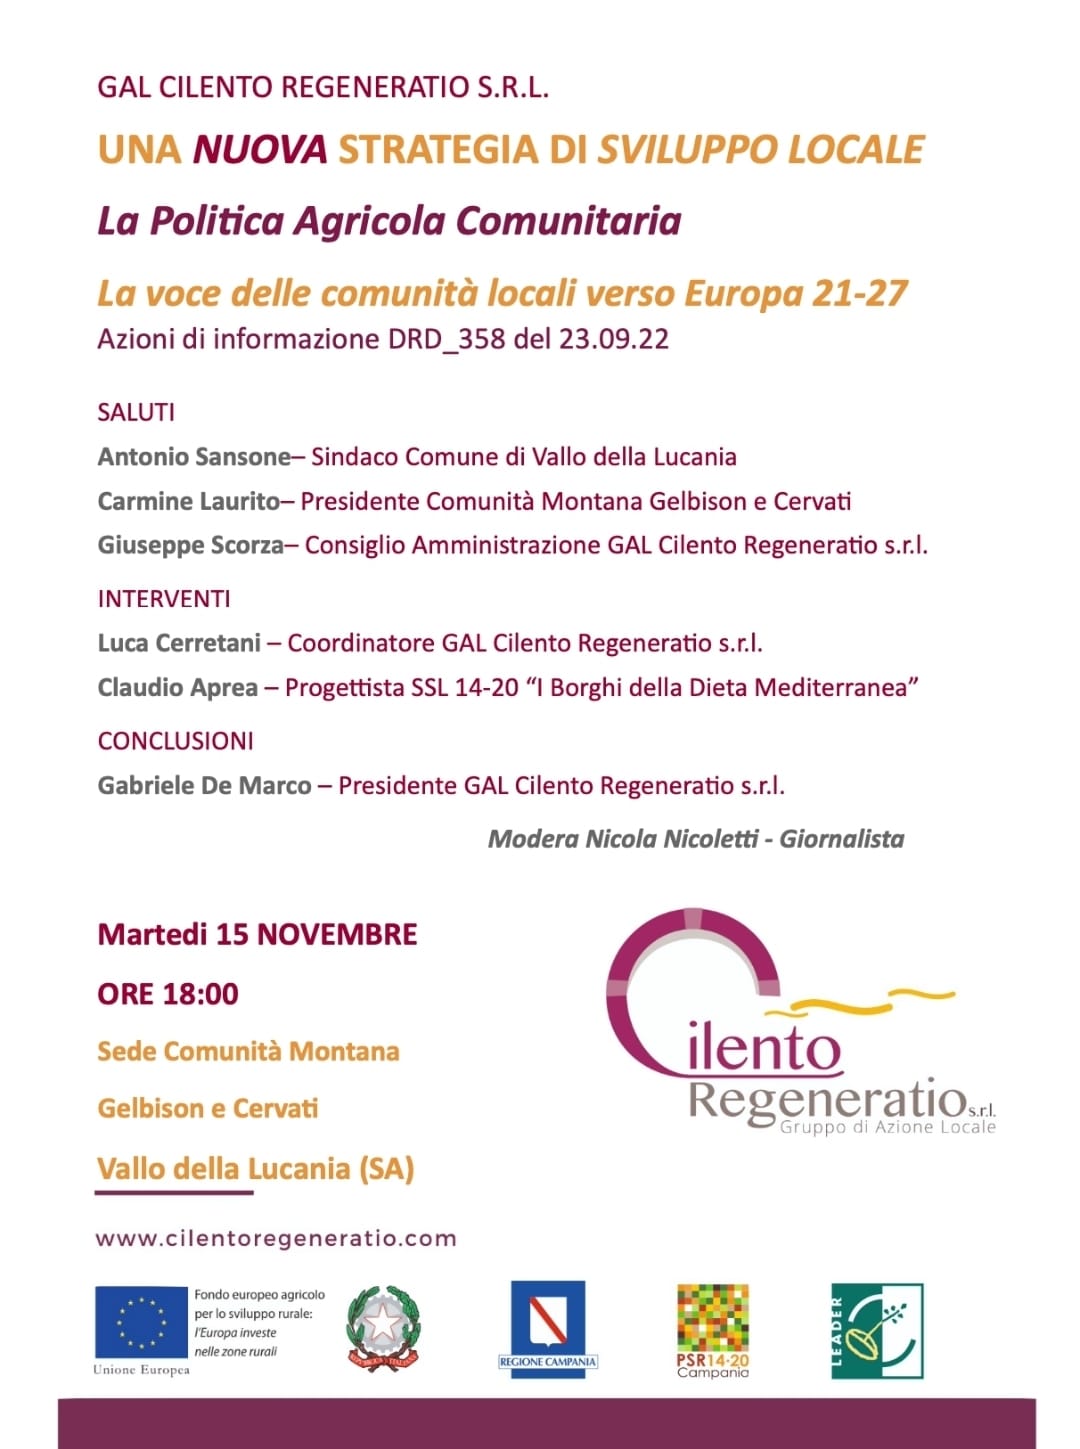 Vallo della Lucania: GAL Cilento Regeneratio, Politica agricola comunitaria, ciclo d’ incontri  